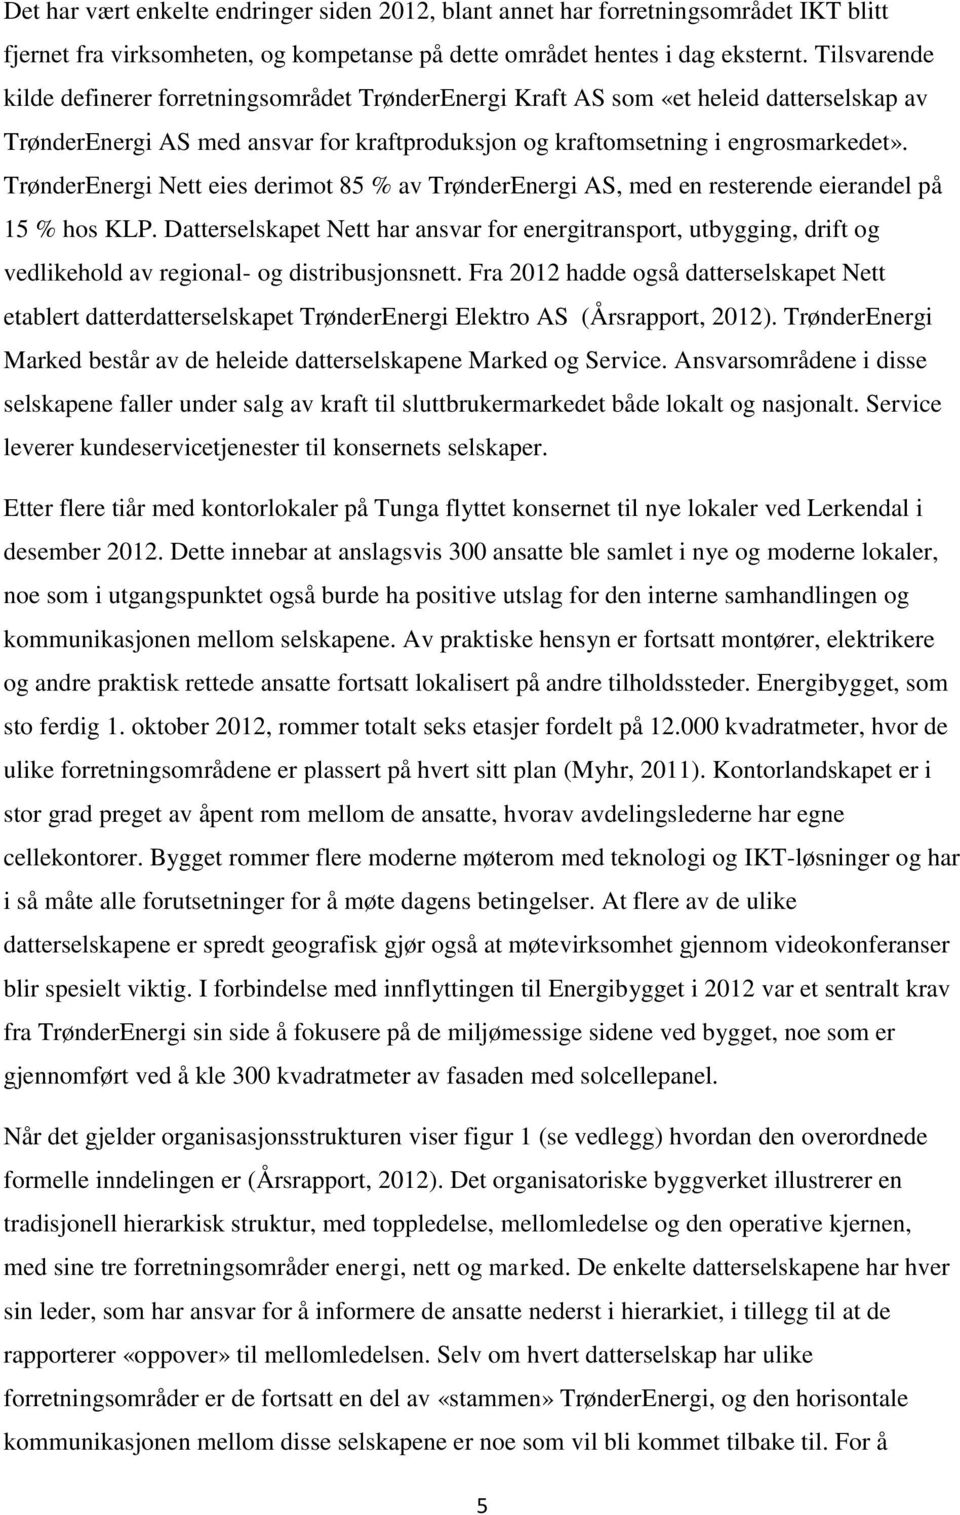 TrønderEnergi Nett eies derimot 85 % av TrønderEnergi AS, med en resterende eierandel på 15 % hos KLP.